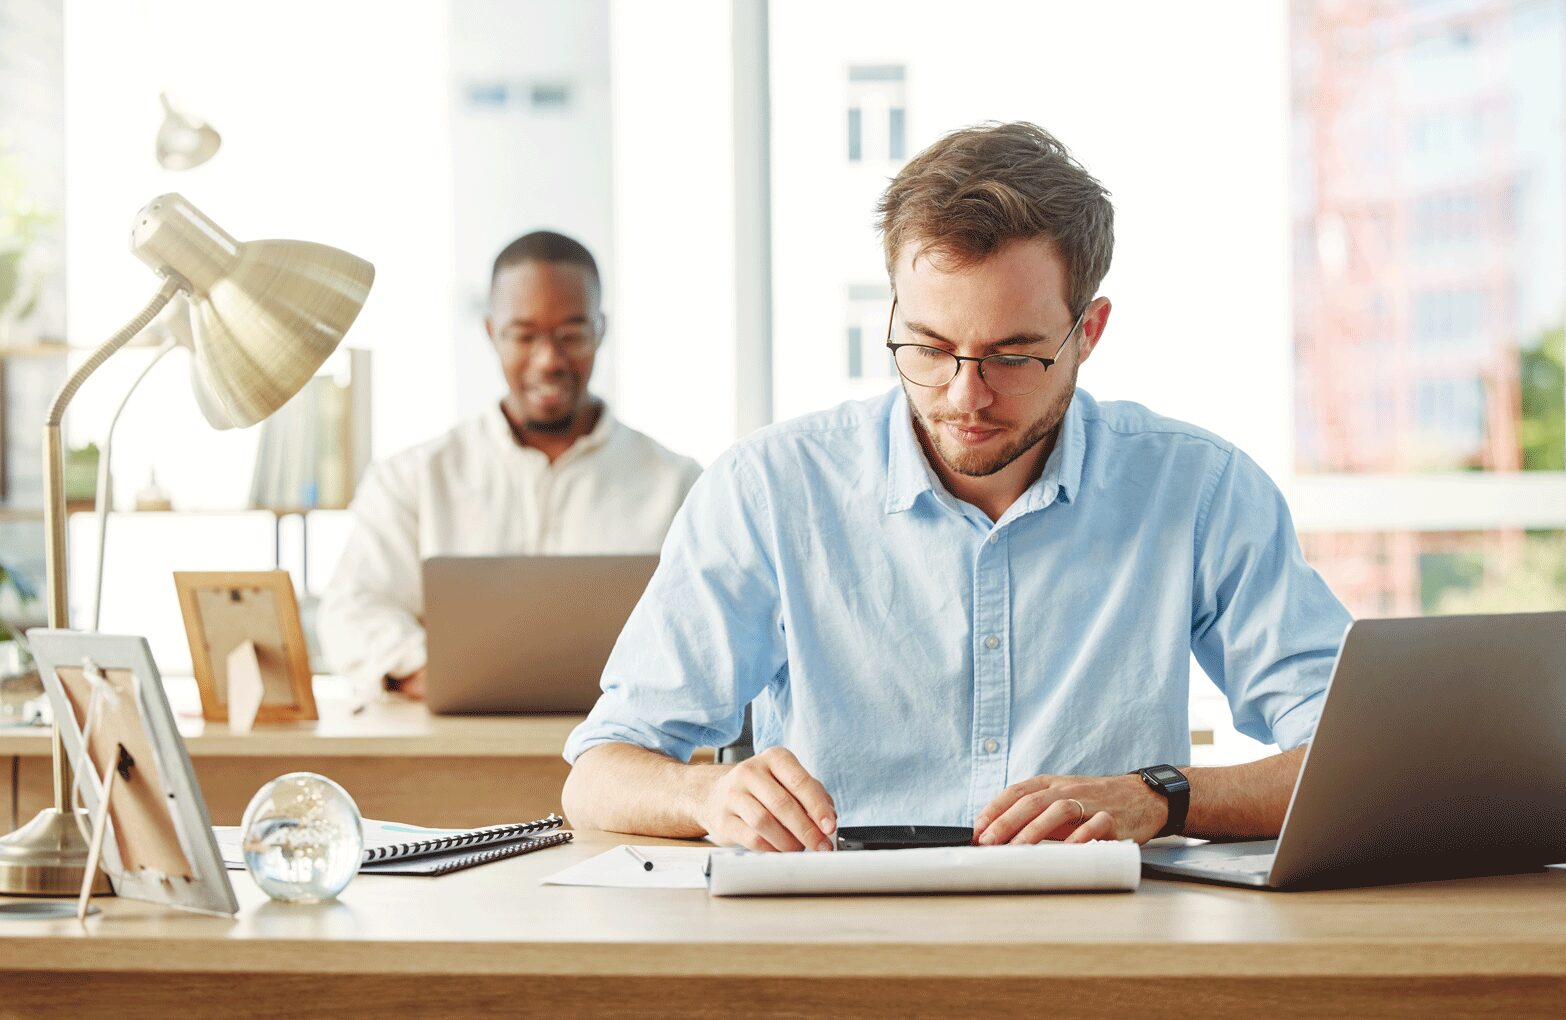 karriere tutor Zwei Männer arbeiten an Schreibtischen in einem hell erleuchteten Büro. Der Mann im Vordergrund, der eine Brille und ein hellblaues Hemd trägt, ist konzentriert darauf, in ein Notizbuch zu schreiben, neben ihm steht ein Laptop. Im Hintergrund arbeitet ein anderer Mann an einem Laptop und lächelt.